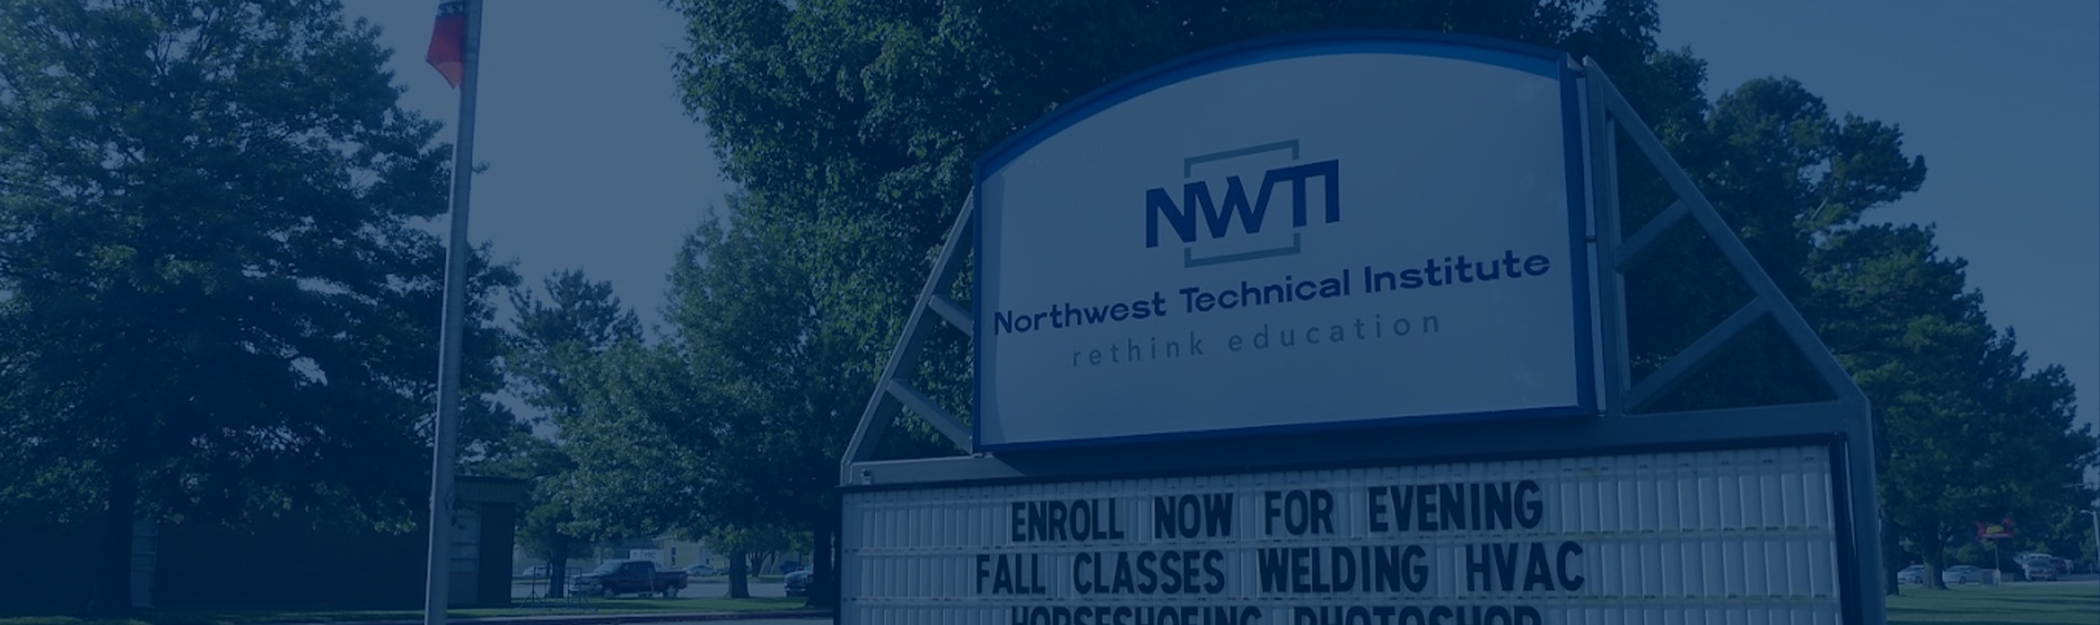 Northwest-Technical-Institute